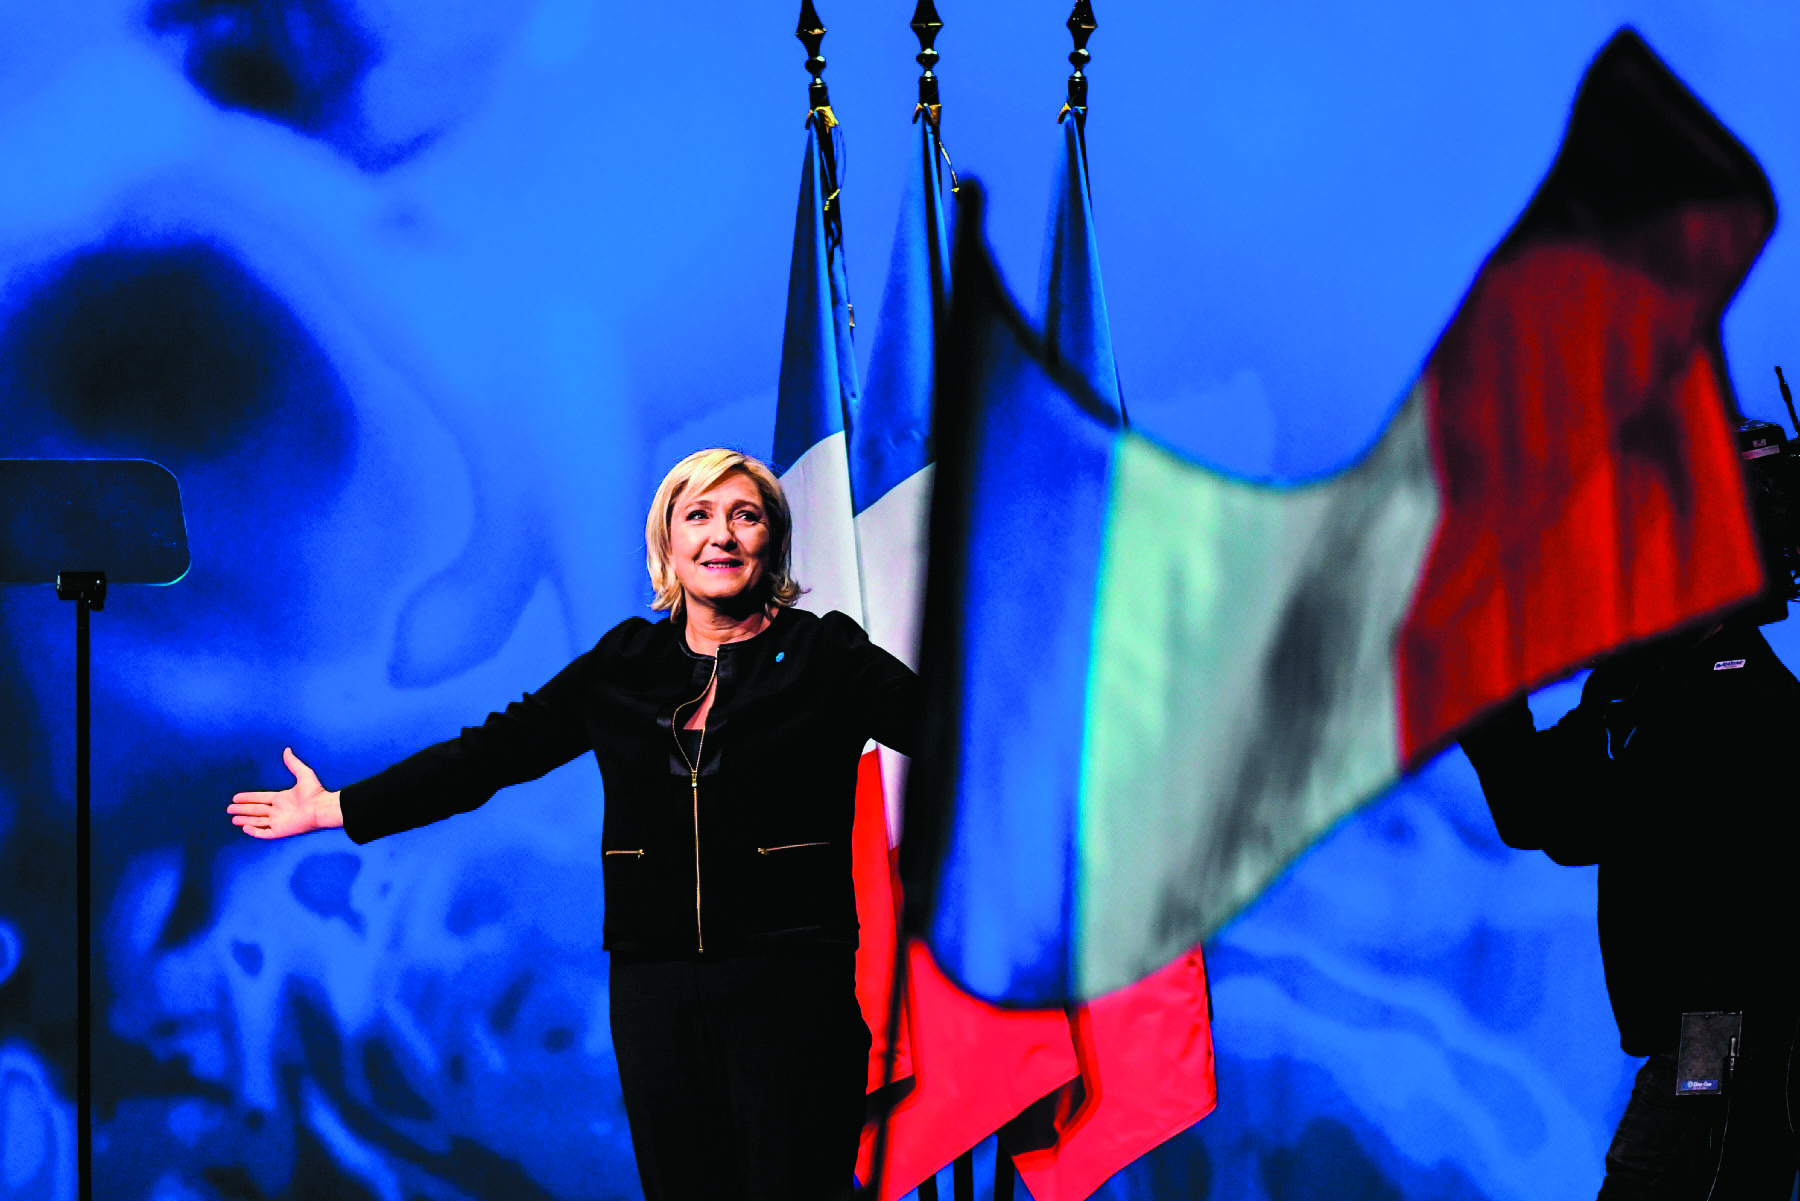 Le Pen ultrapassa Macron nas sondagens para as europeias